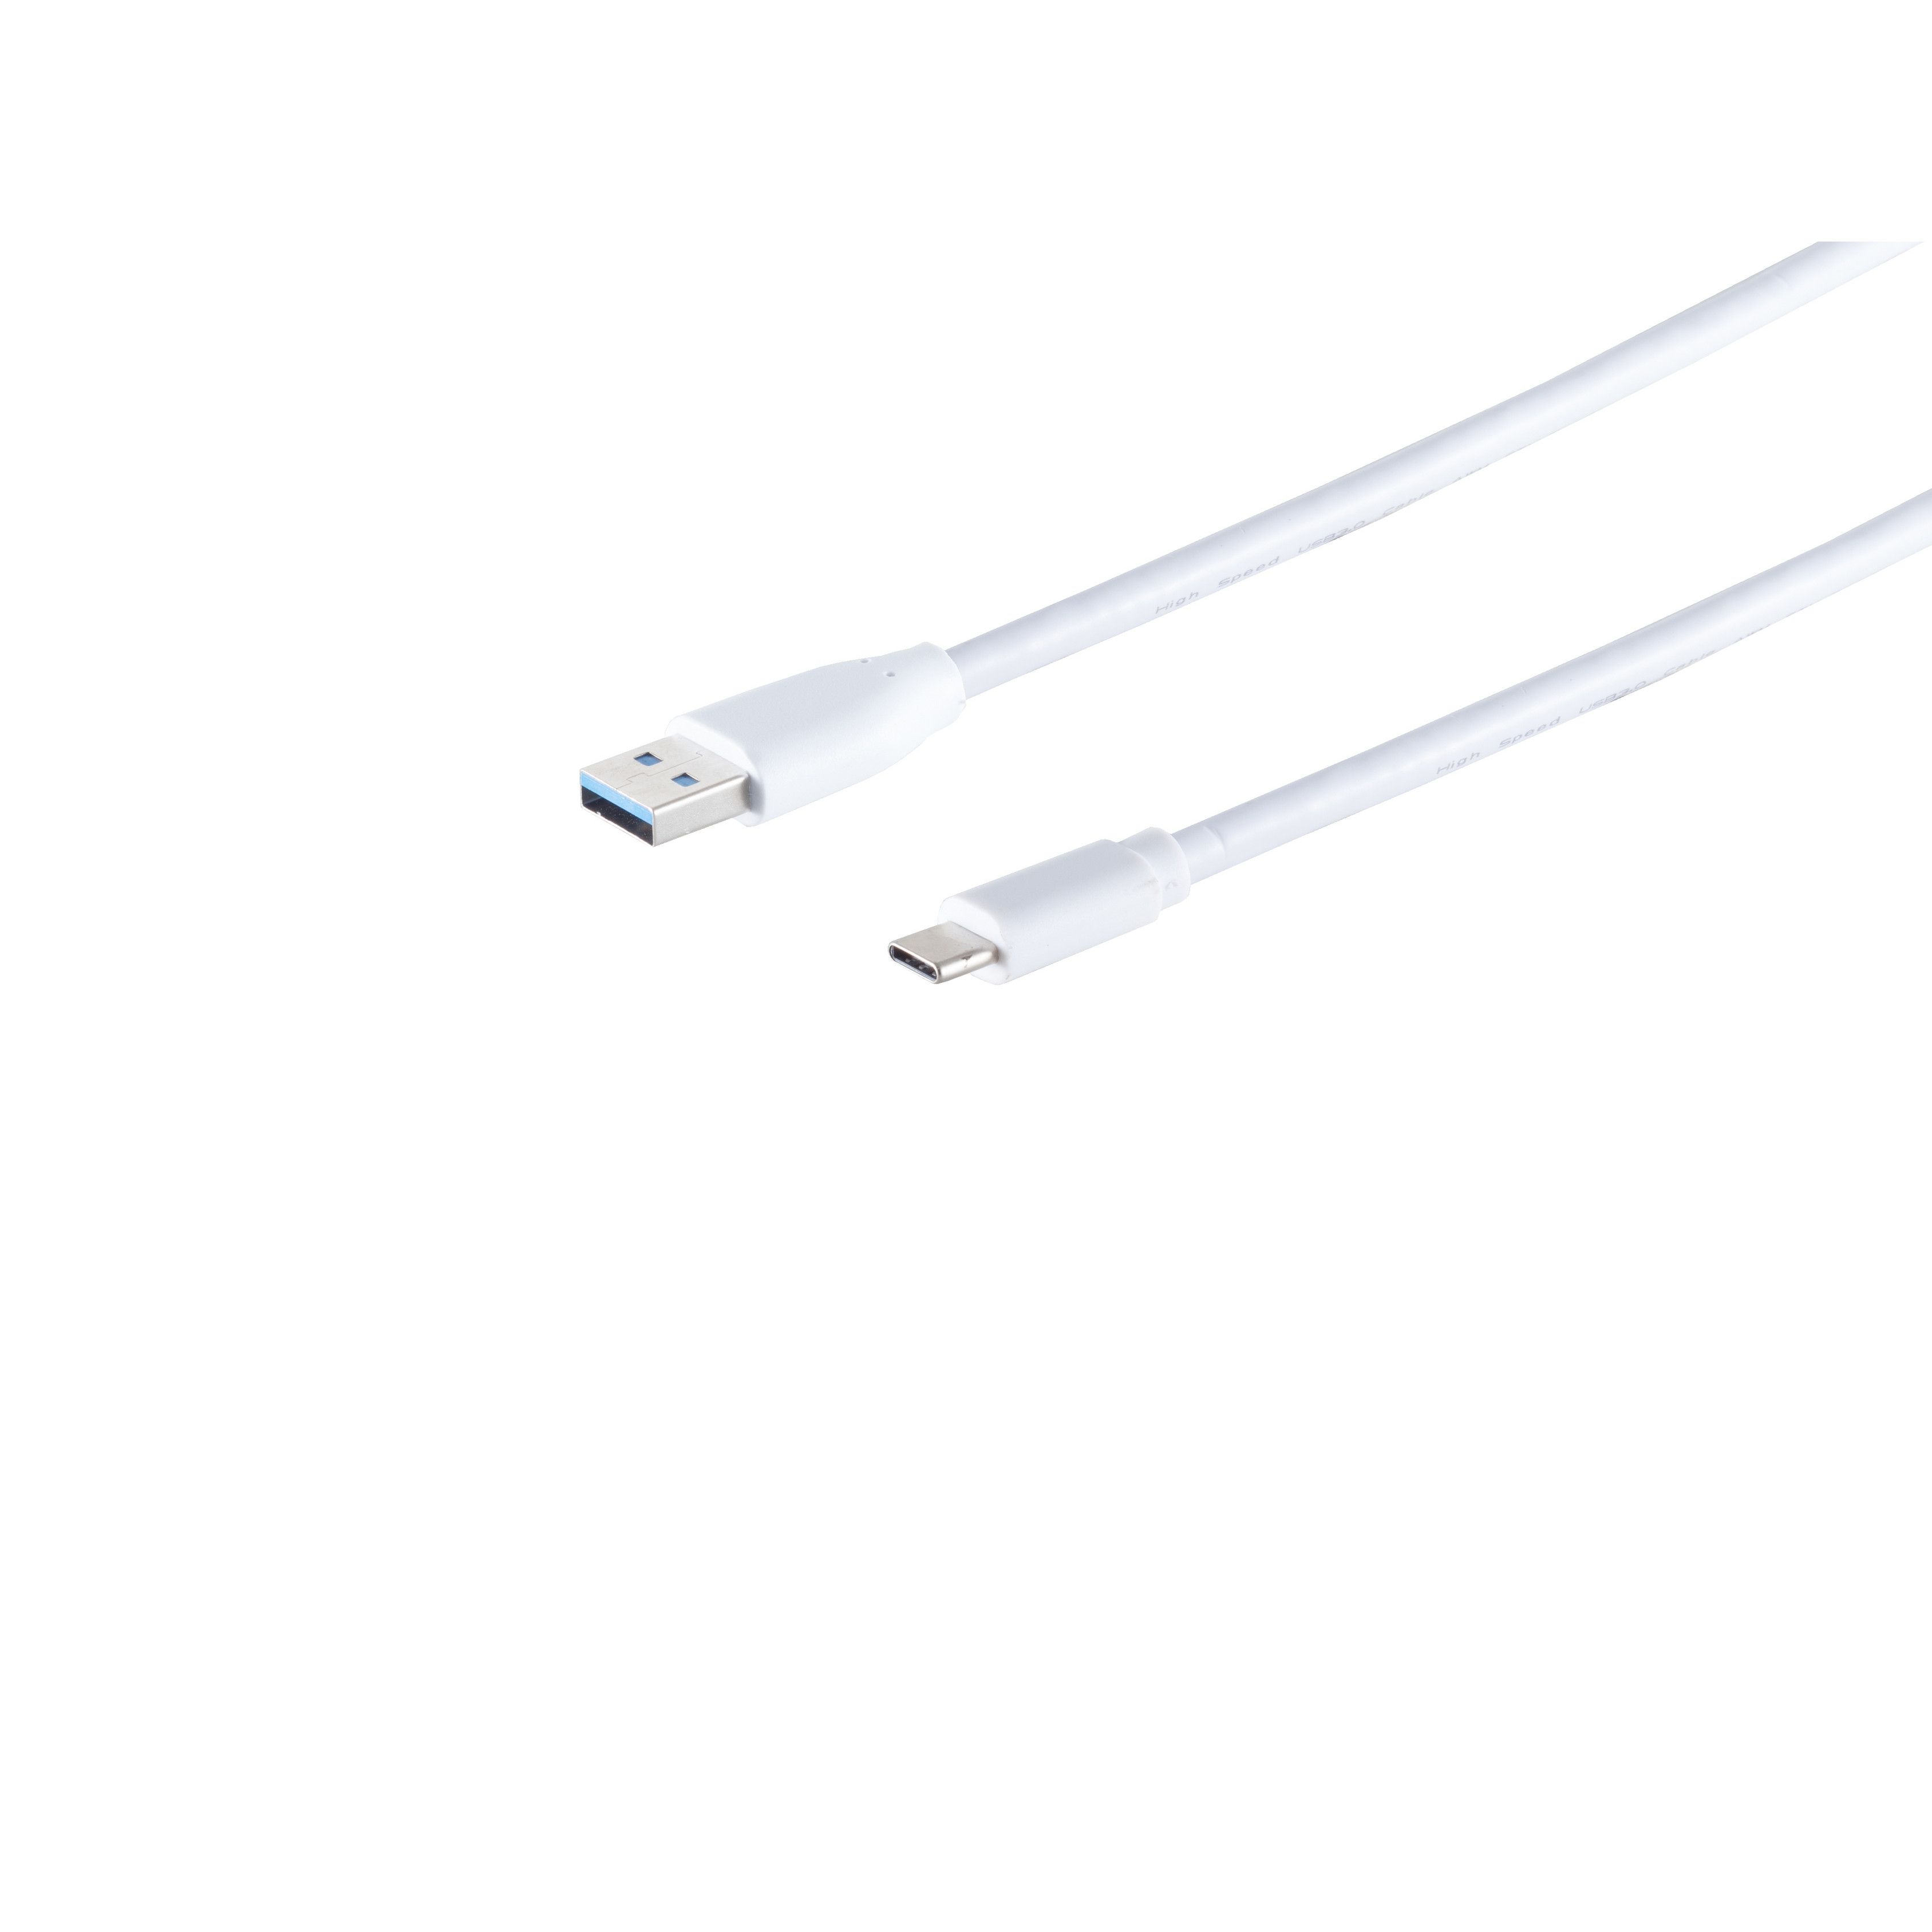 KABELBUDE USB Kabel 3.0 1,8m 3.1C Stecker-USB Stecker USB A weiß Kabel